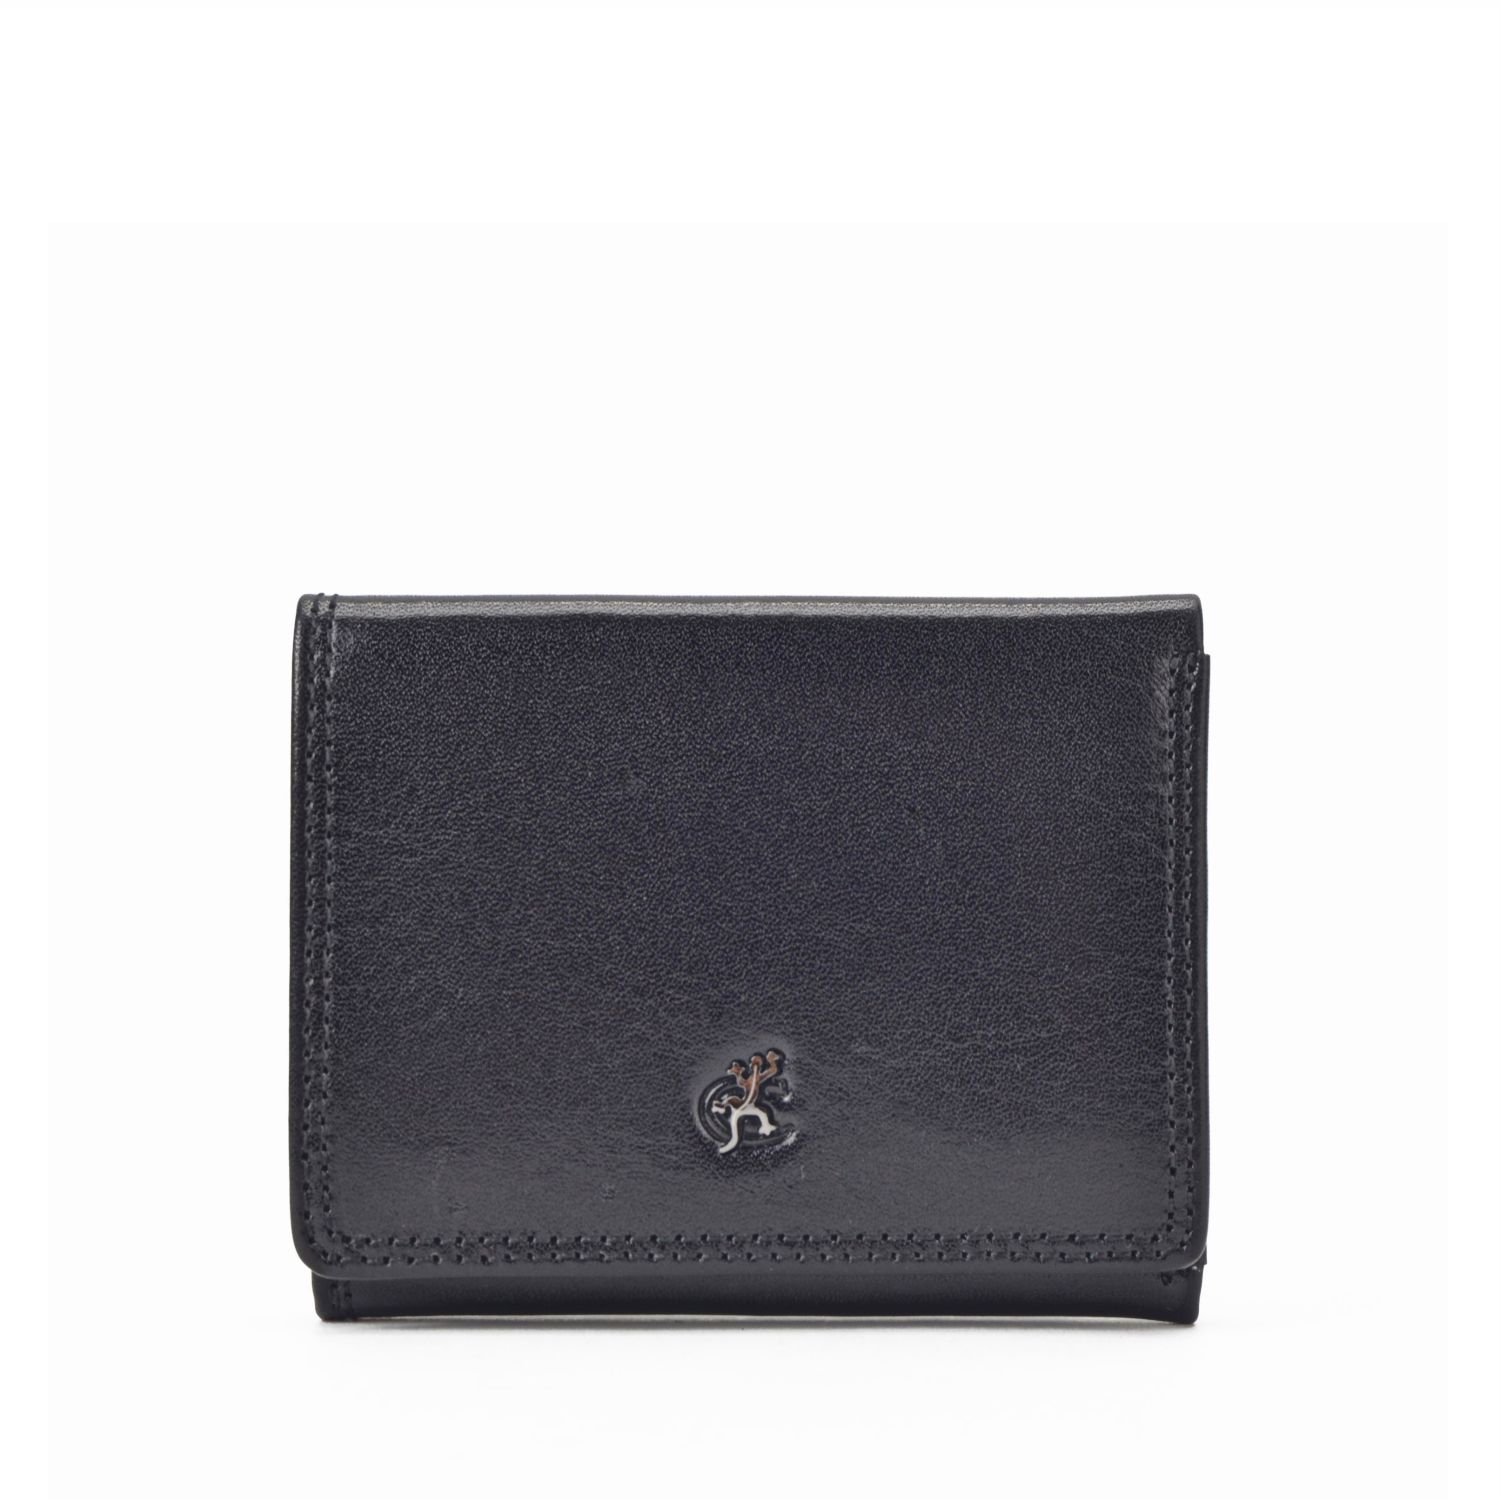 Černá dámská kožená peněženka Cosset Komodo 4508